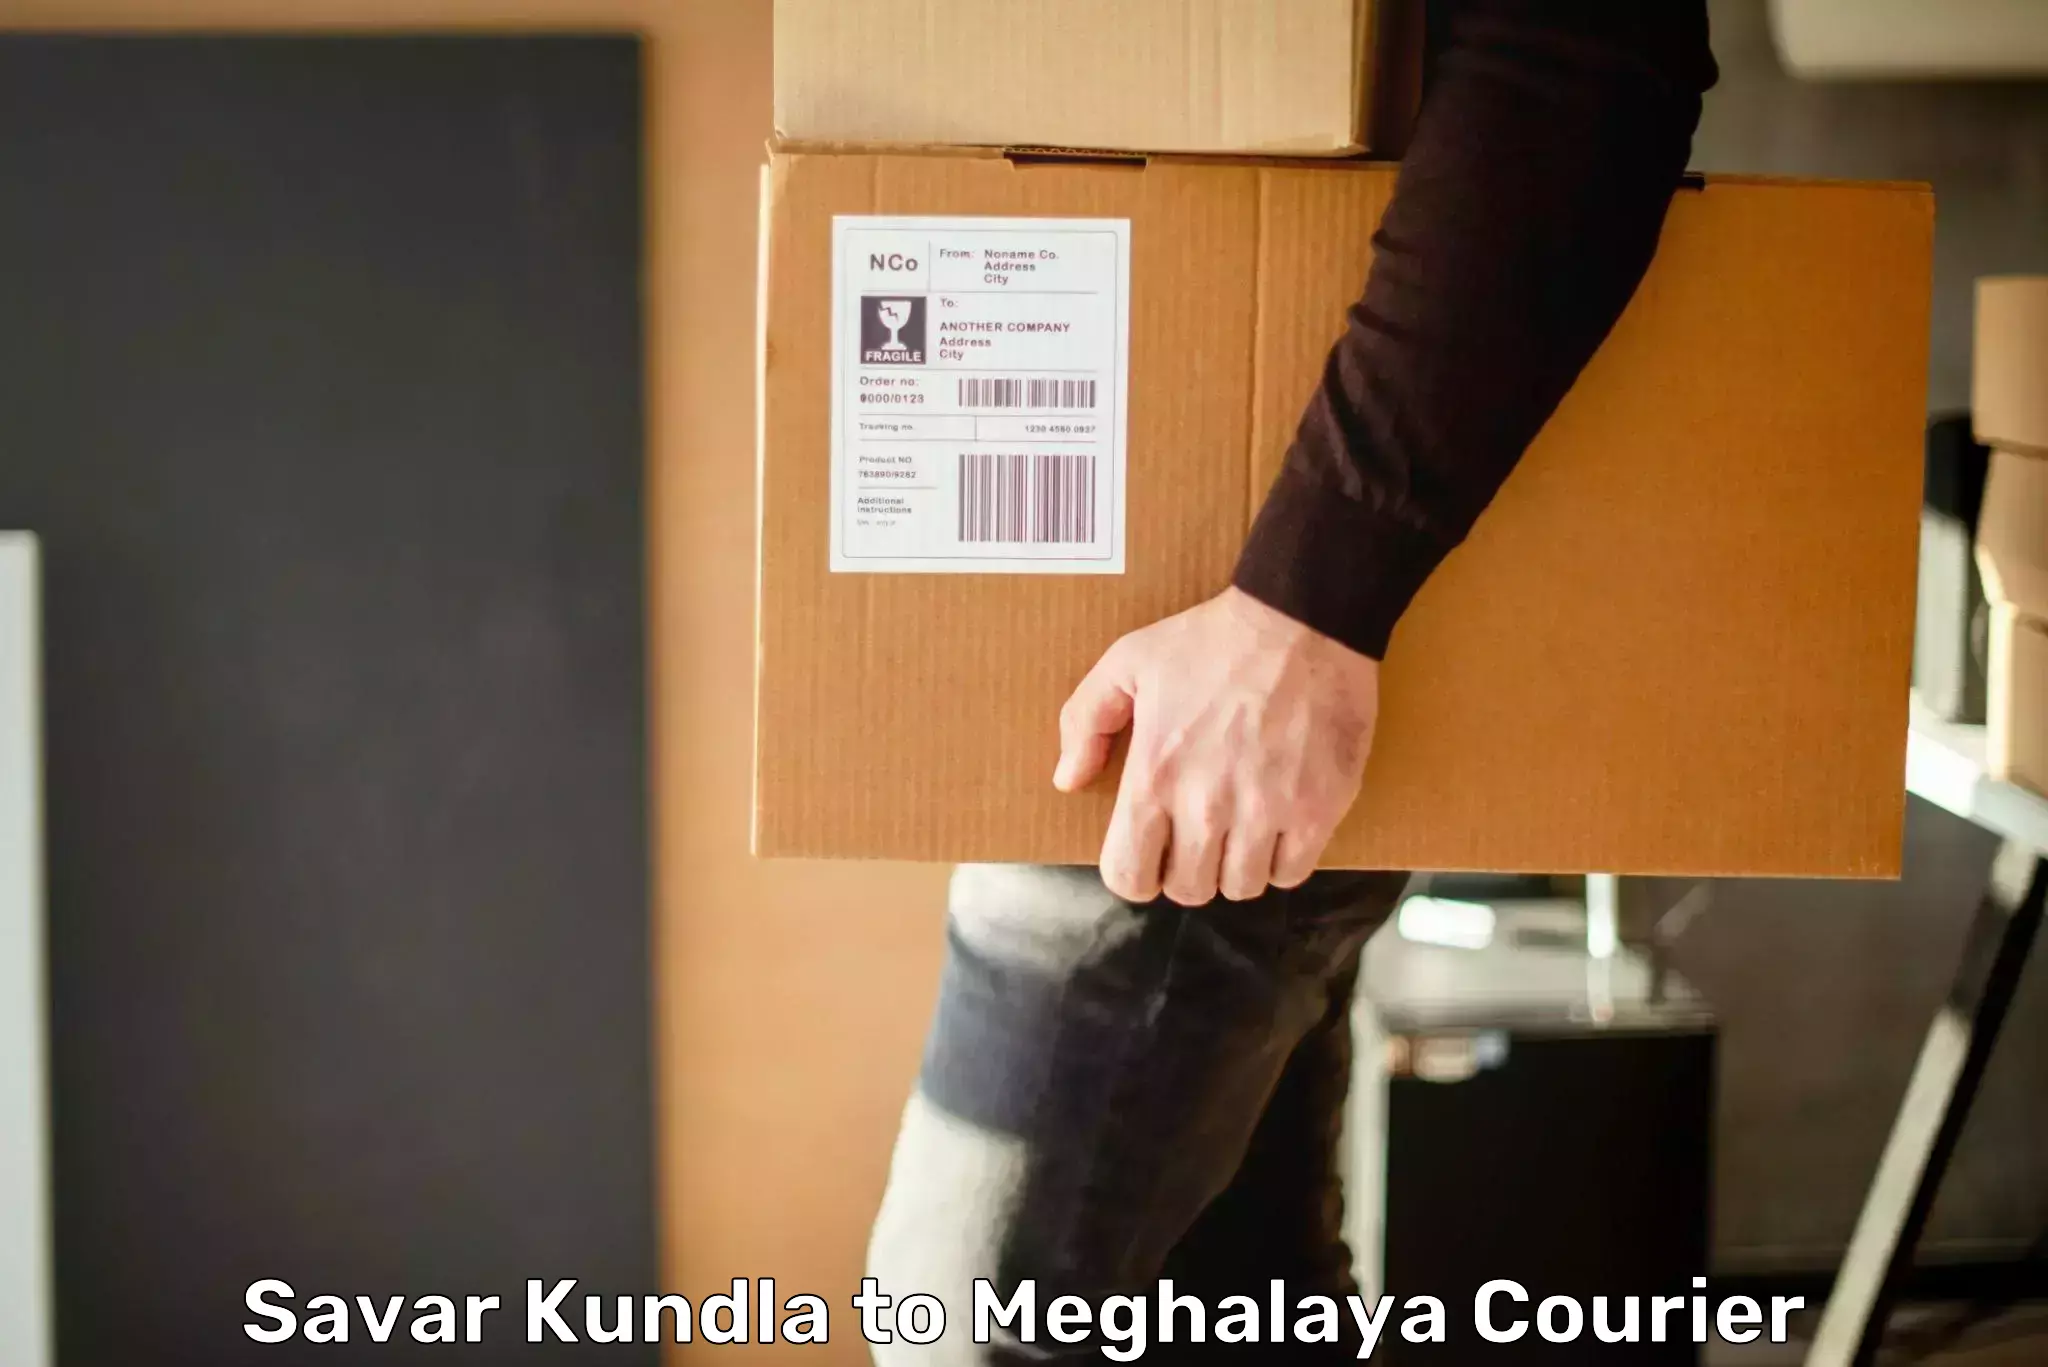 Fast delivery service Savar Kundla to Meghalaya